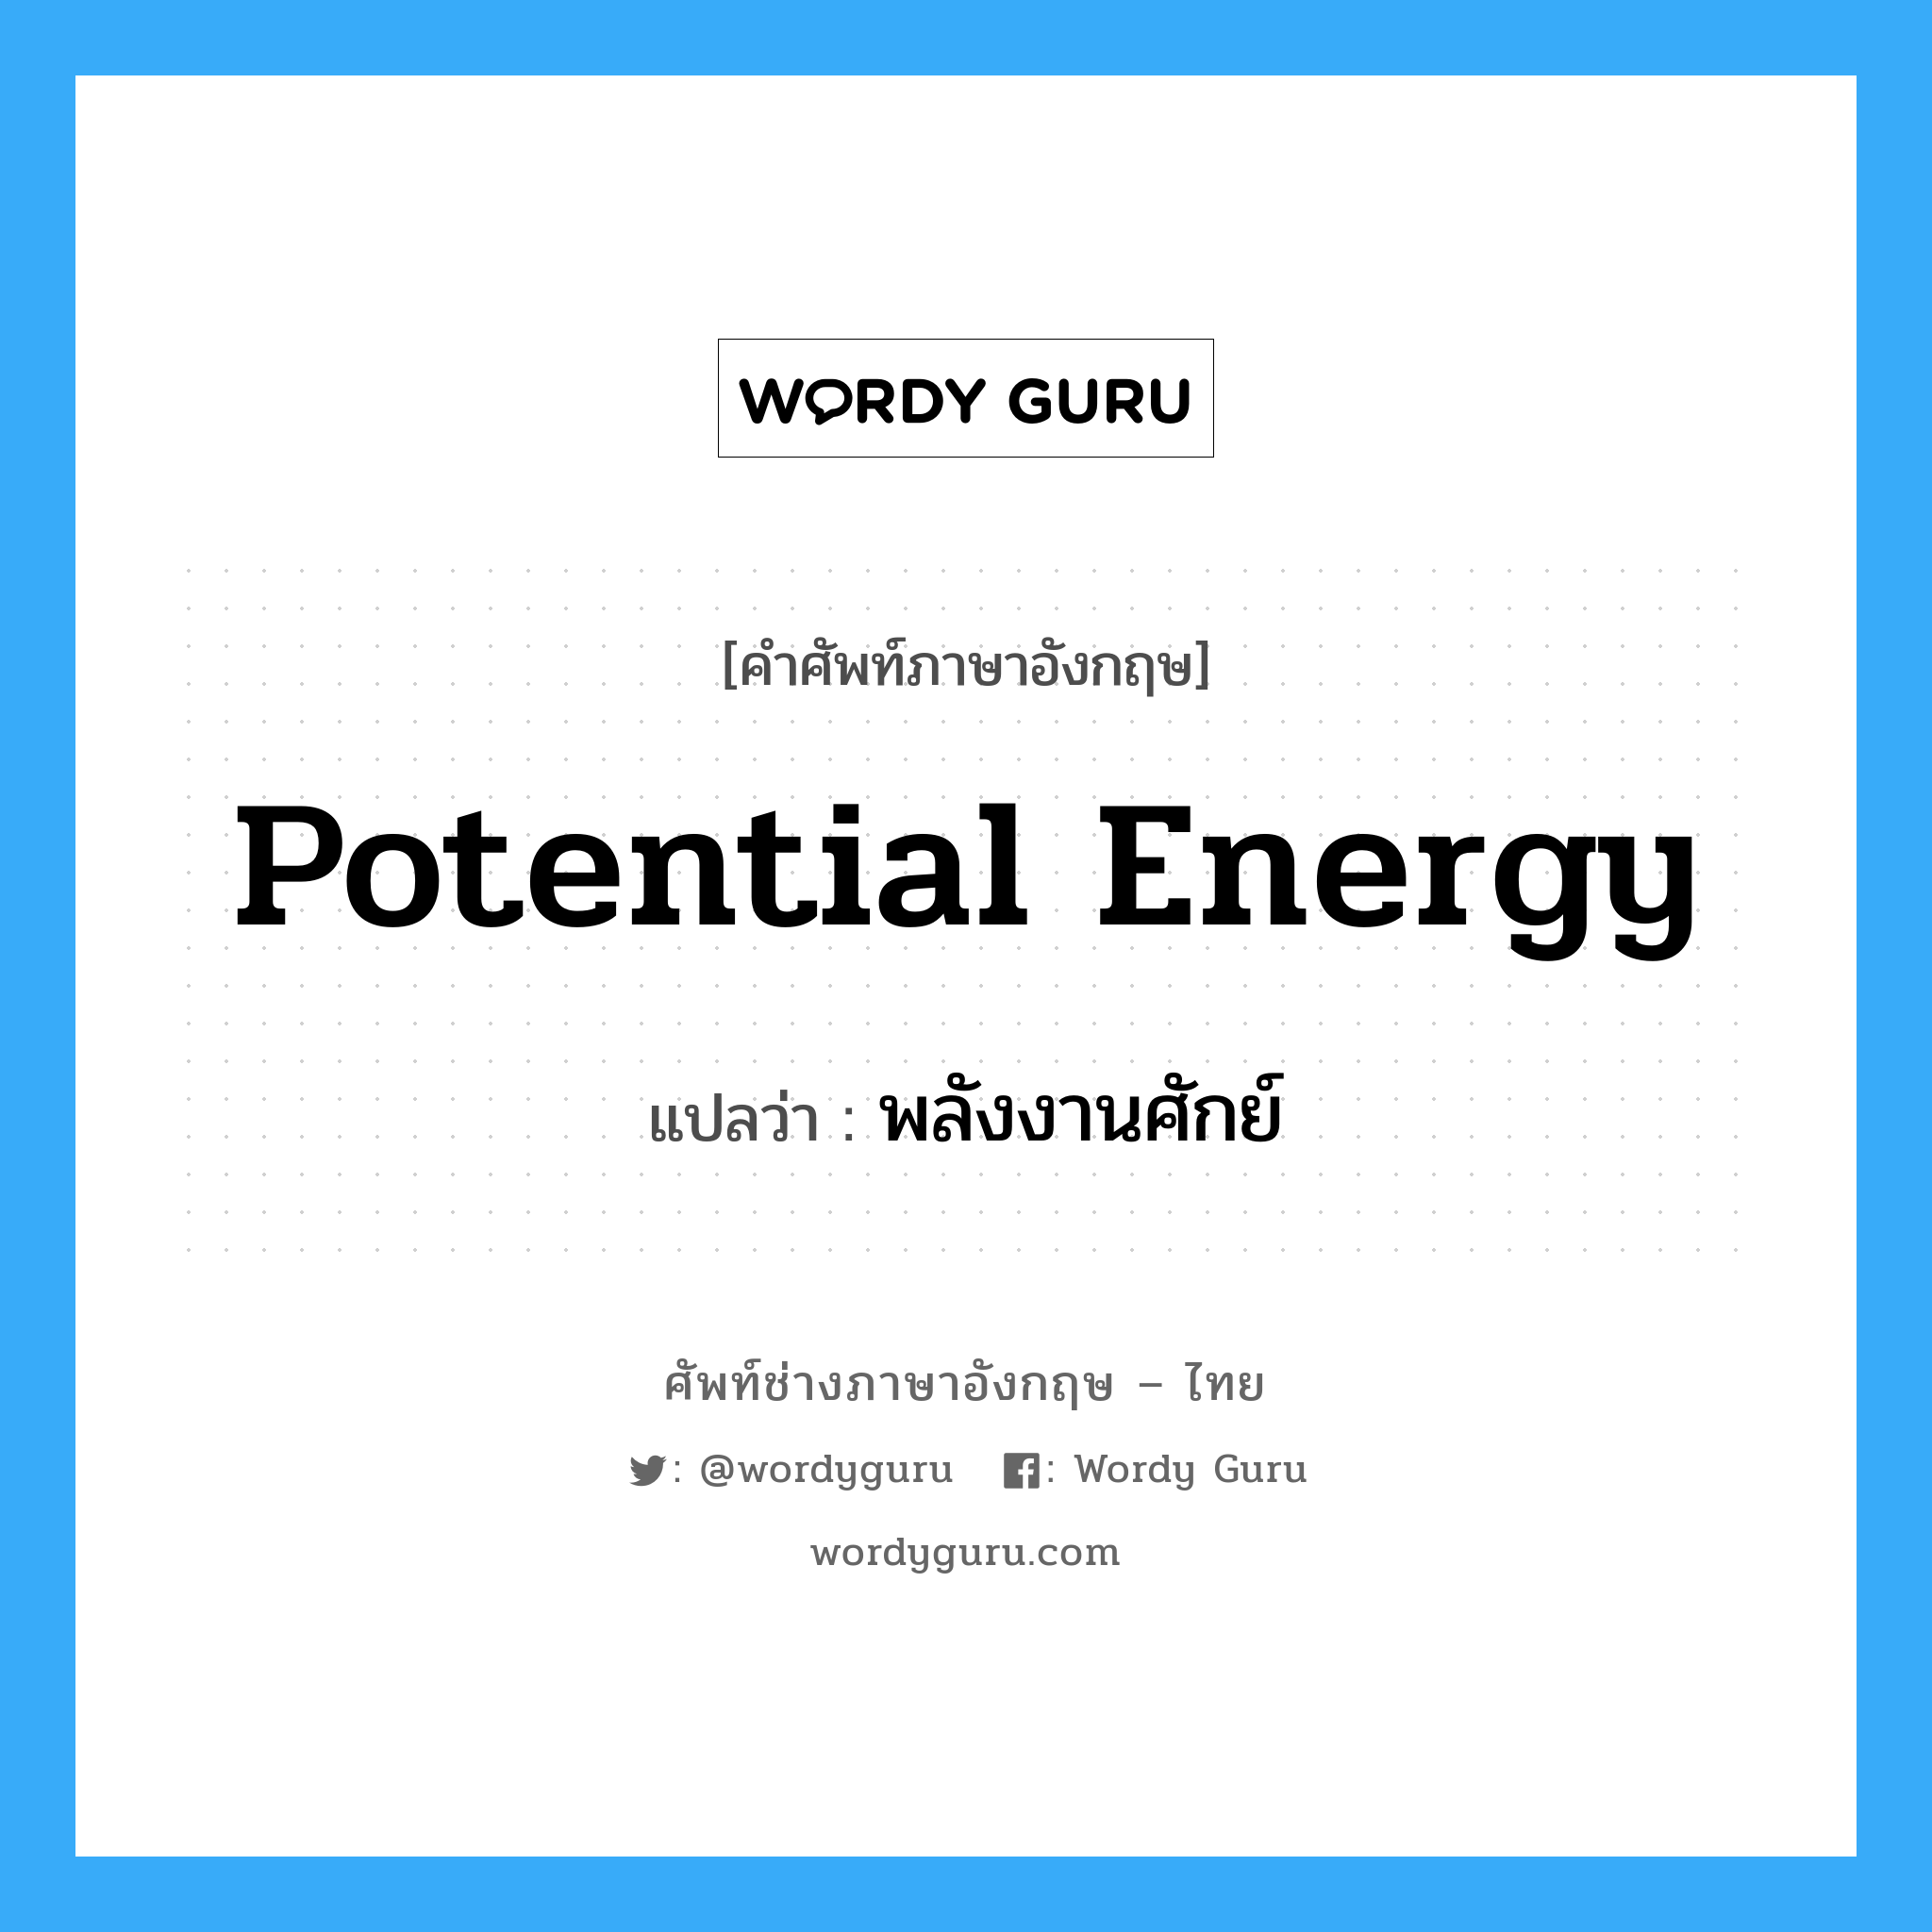 พลังงานศักย์ ภาษาอังกฤษ?, คำศัพท์ช่างภาษาอังกฤษ - ไทย พลังงานศักย์ คำศัพท์ภาษาอังกฤษ พลังงานศักย์ แปลว่า potential energy